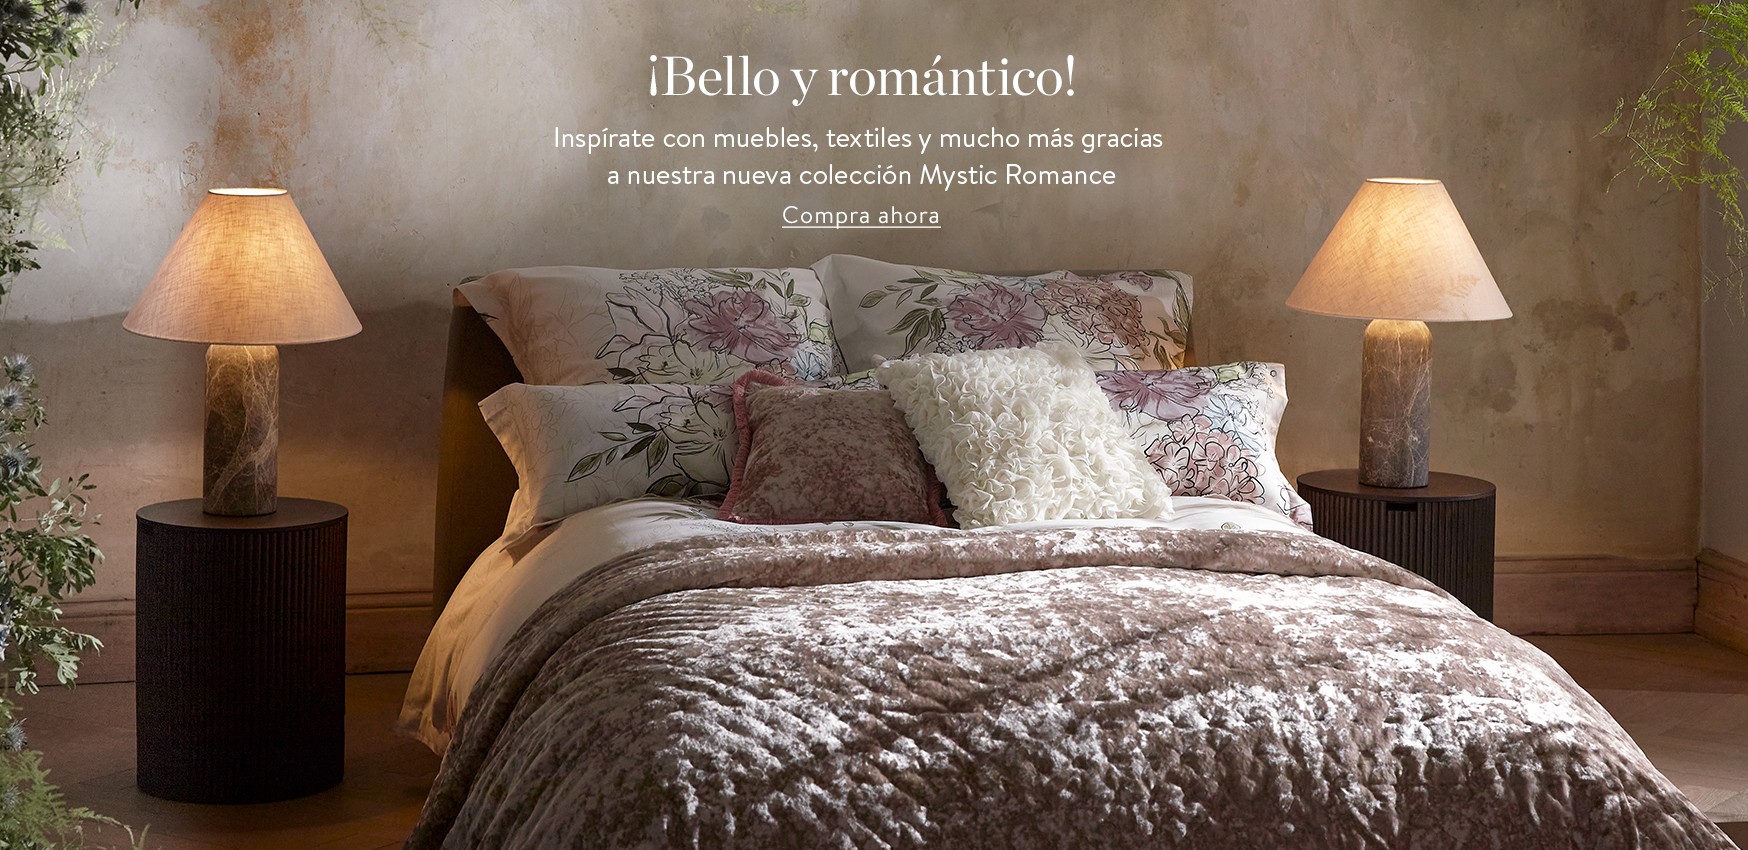 ¡Bello y romántico! Inspírate con muebles, textiles y mucho más gracias a nuestra nueva colección Mystic Romance.